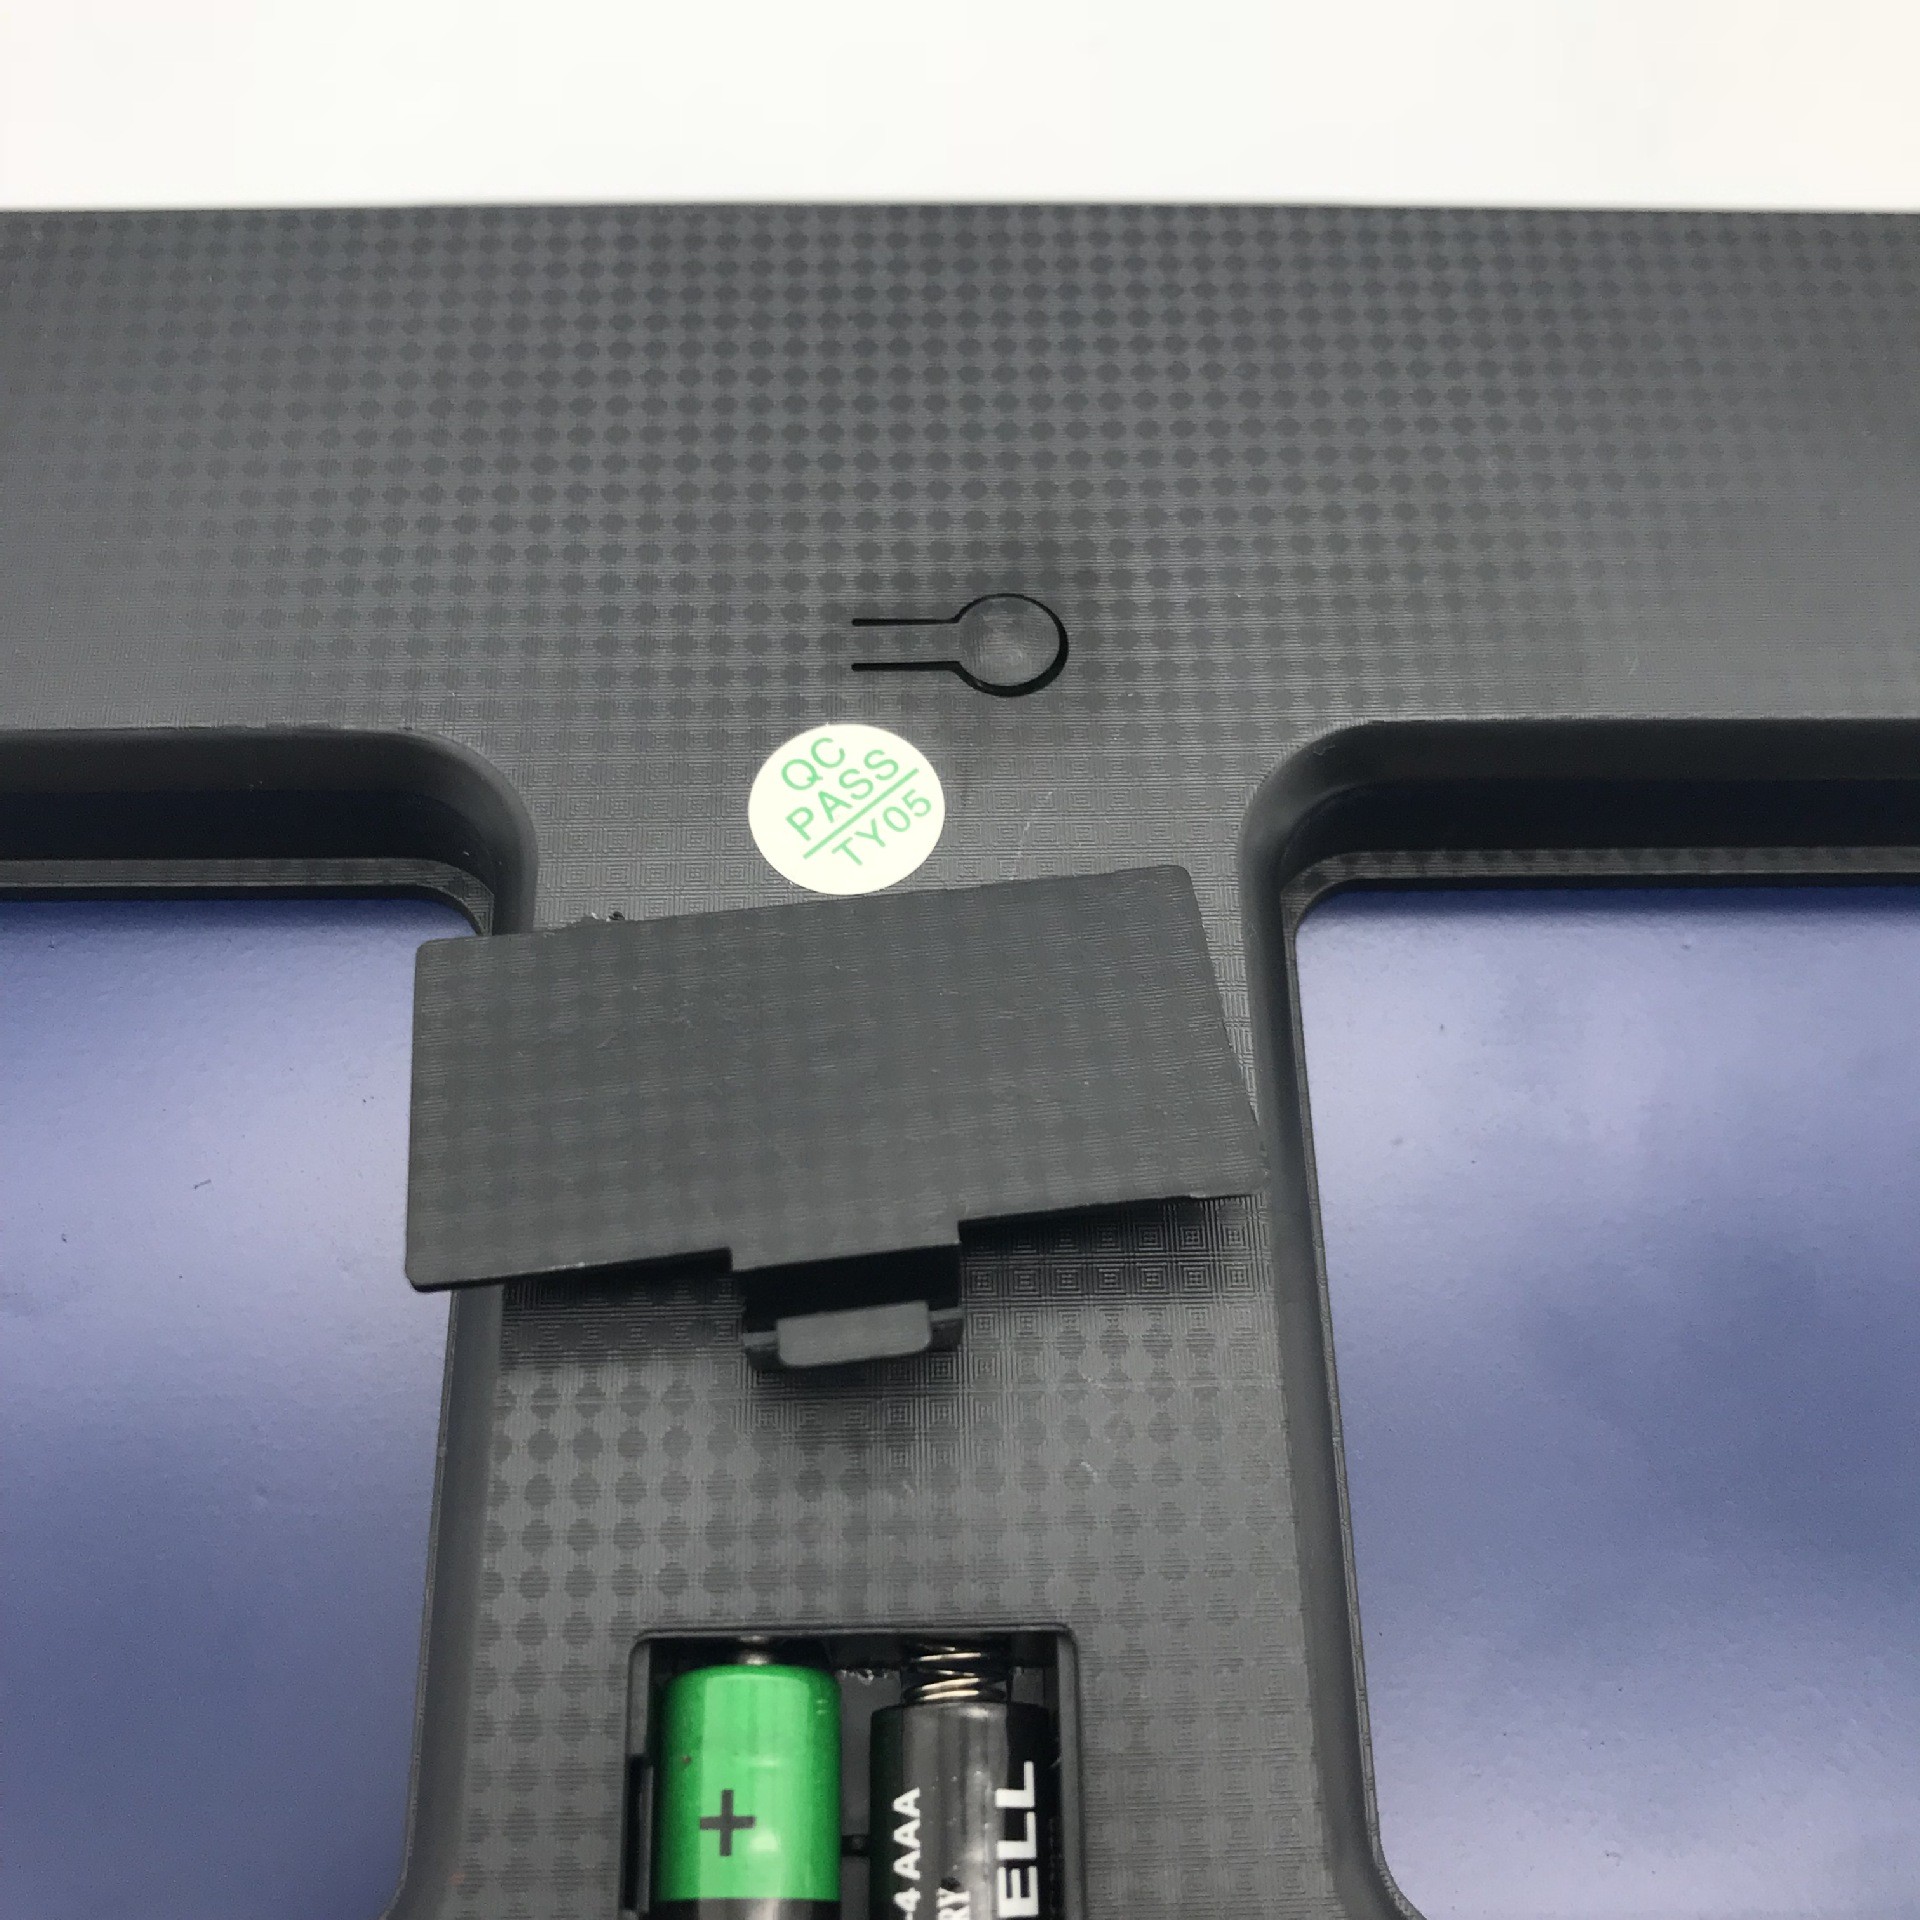 液晶大屏家用体重秤 背光显示电池容量、温度电子秤 新款健康秤详情图7